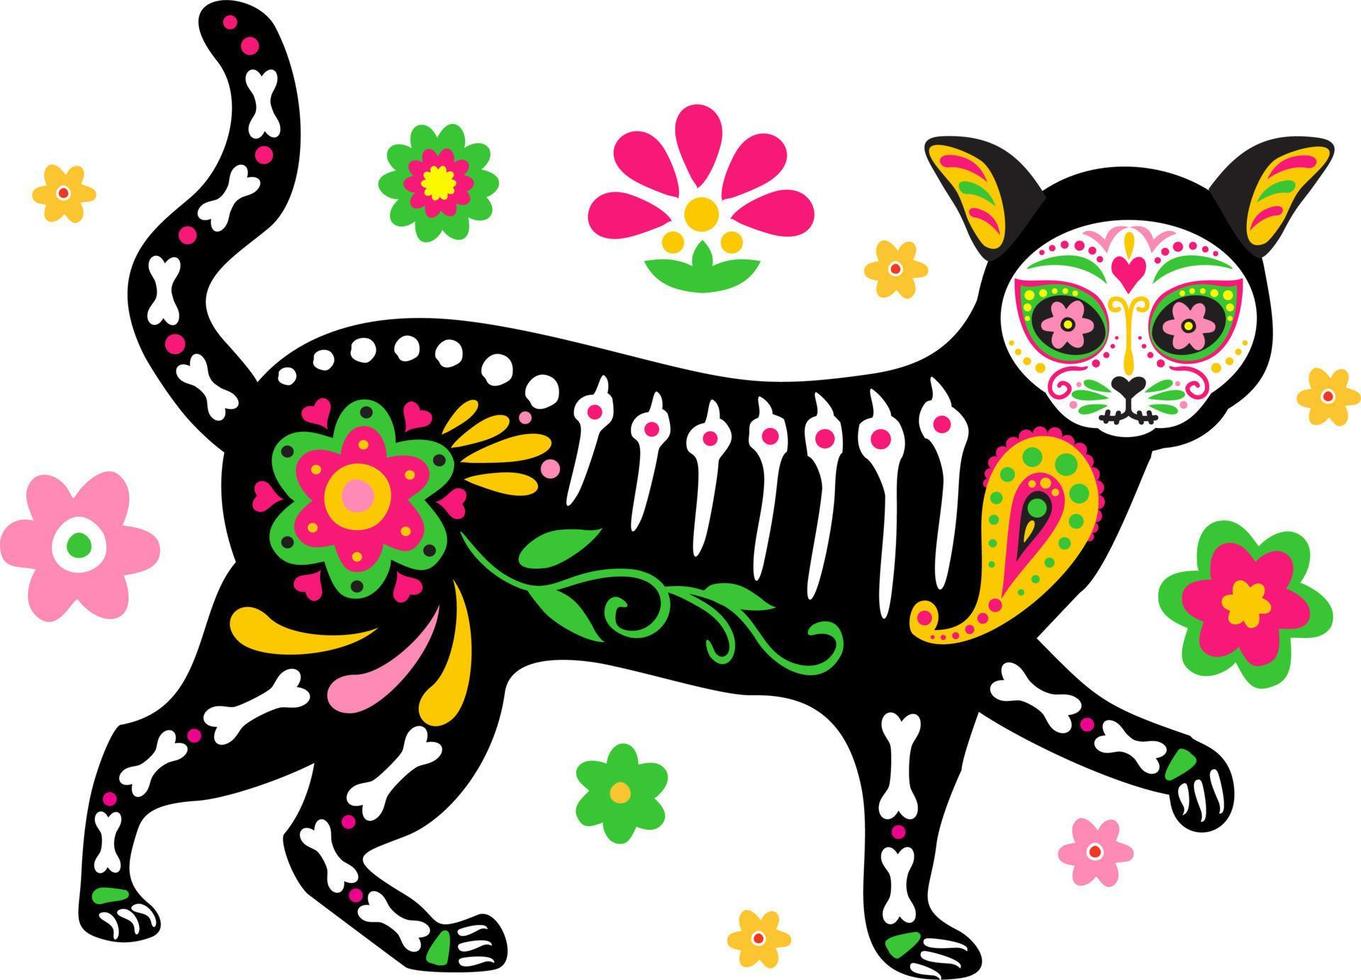 de dödas dag, dia de los muertos, söt kattskalle och skelett dekorerad med färgglada mexikanska vektor